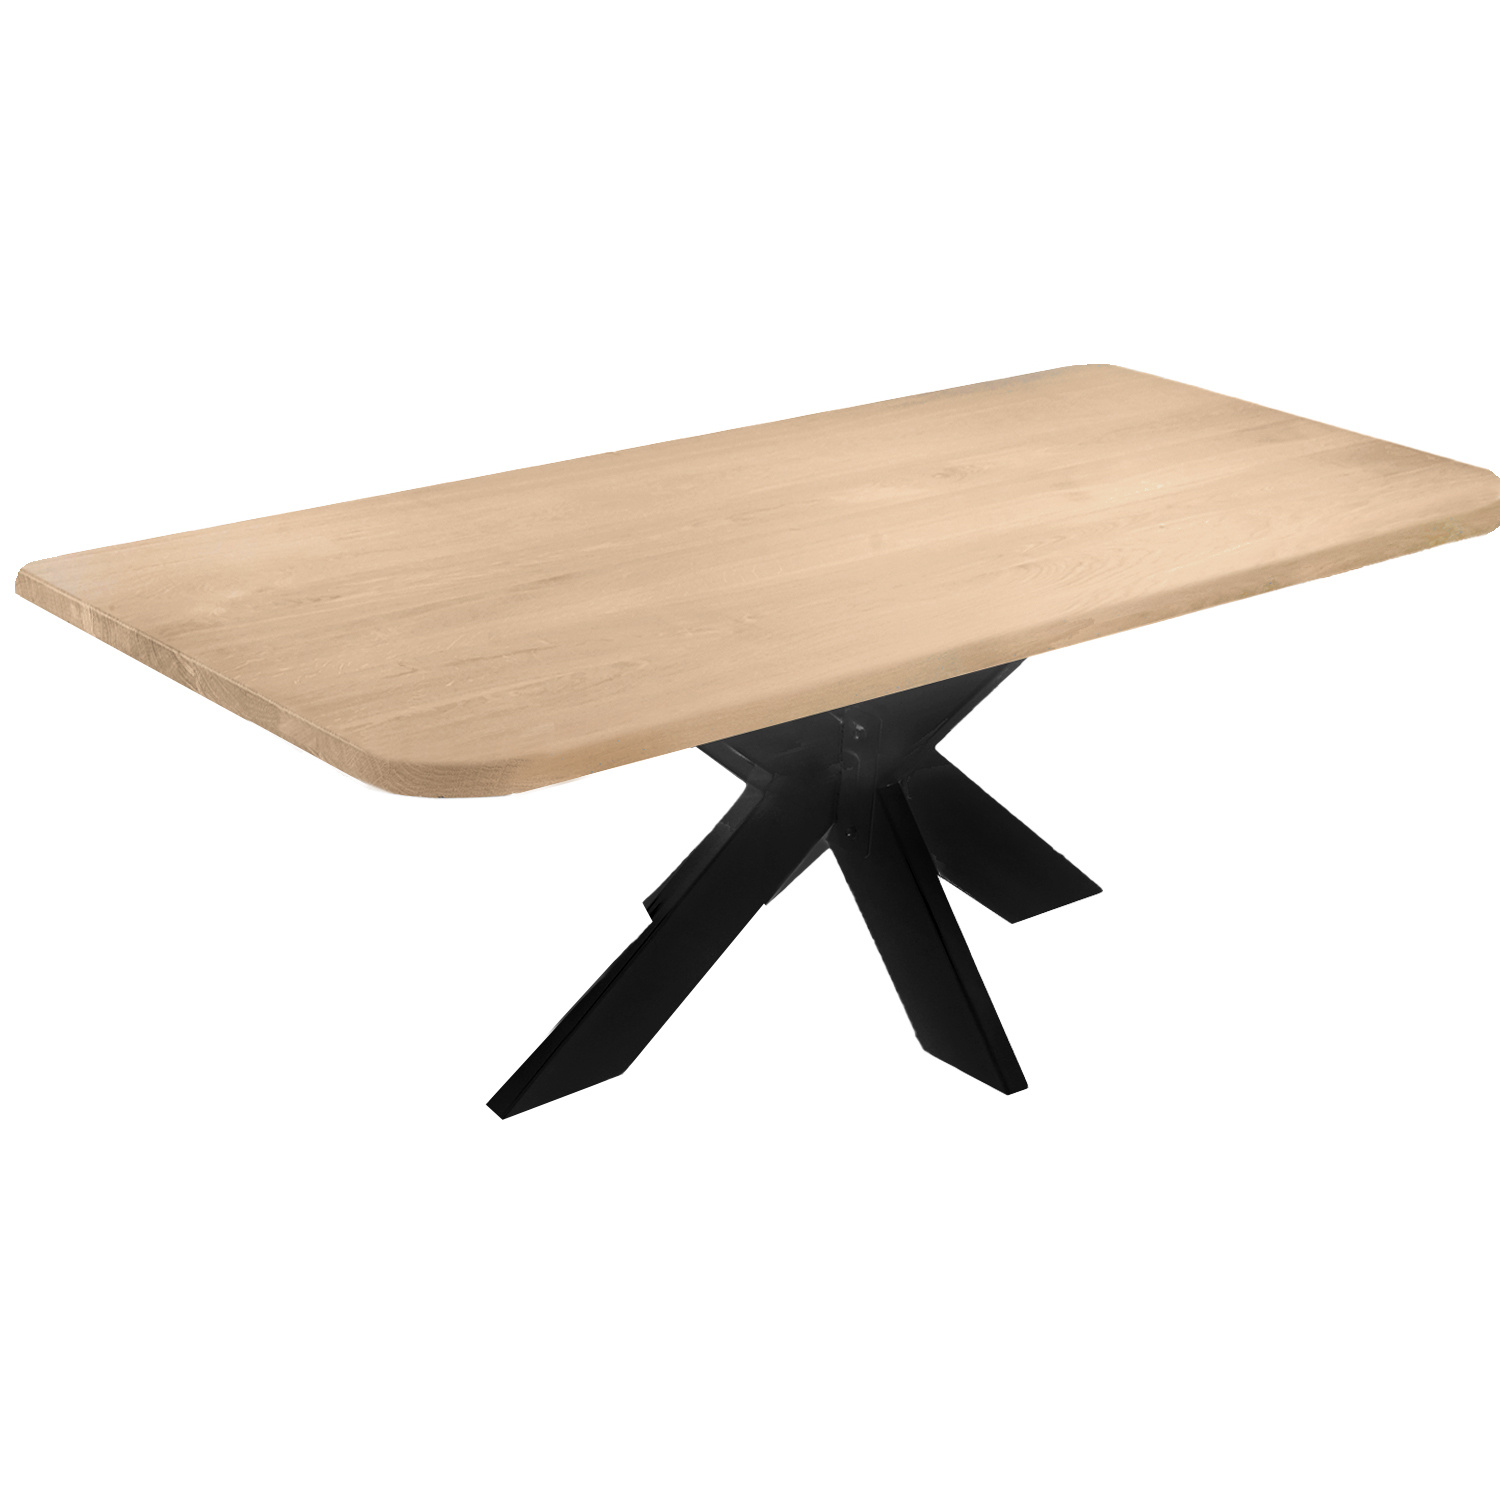  Tischplatte Eiche - mit runden Ecken - 4 cm dick (1-Schicht) - Breite Lamellen (10 - 12 cm breit) - Eichenholz A-Qualität - verleimt & künstlich getrocknet (HF 8-12%) - mit abgerundeten Kanten - verschiedene Größen